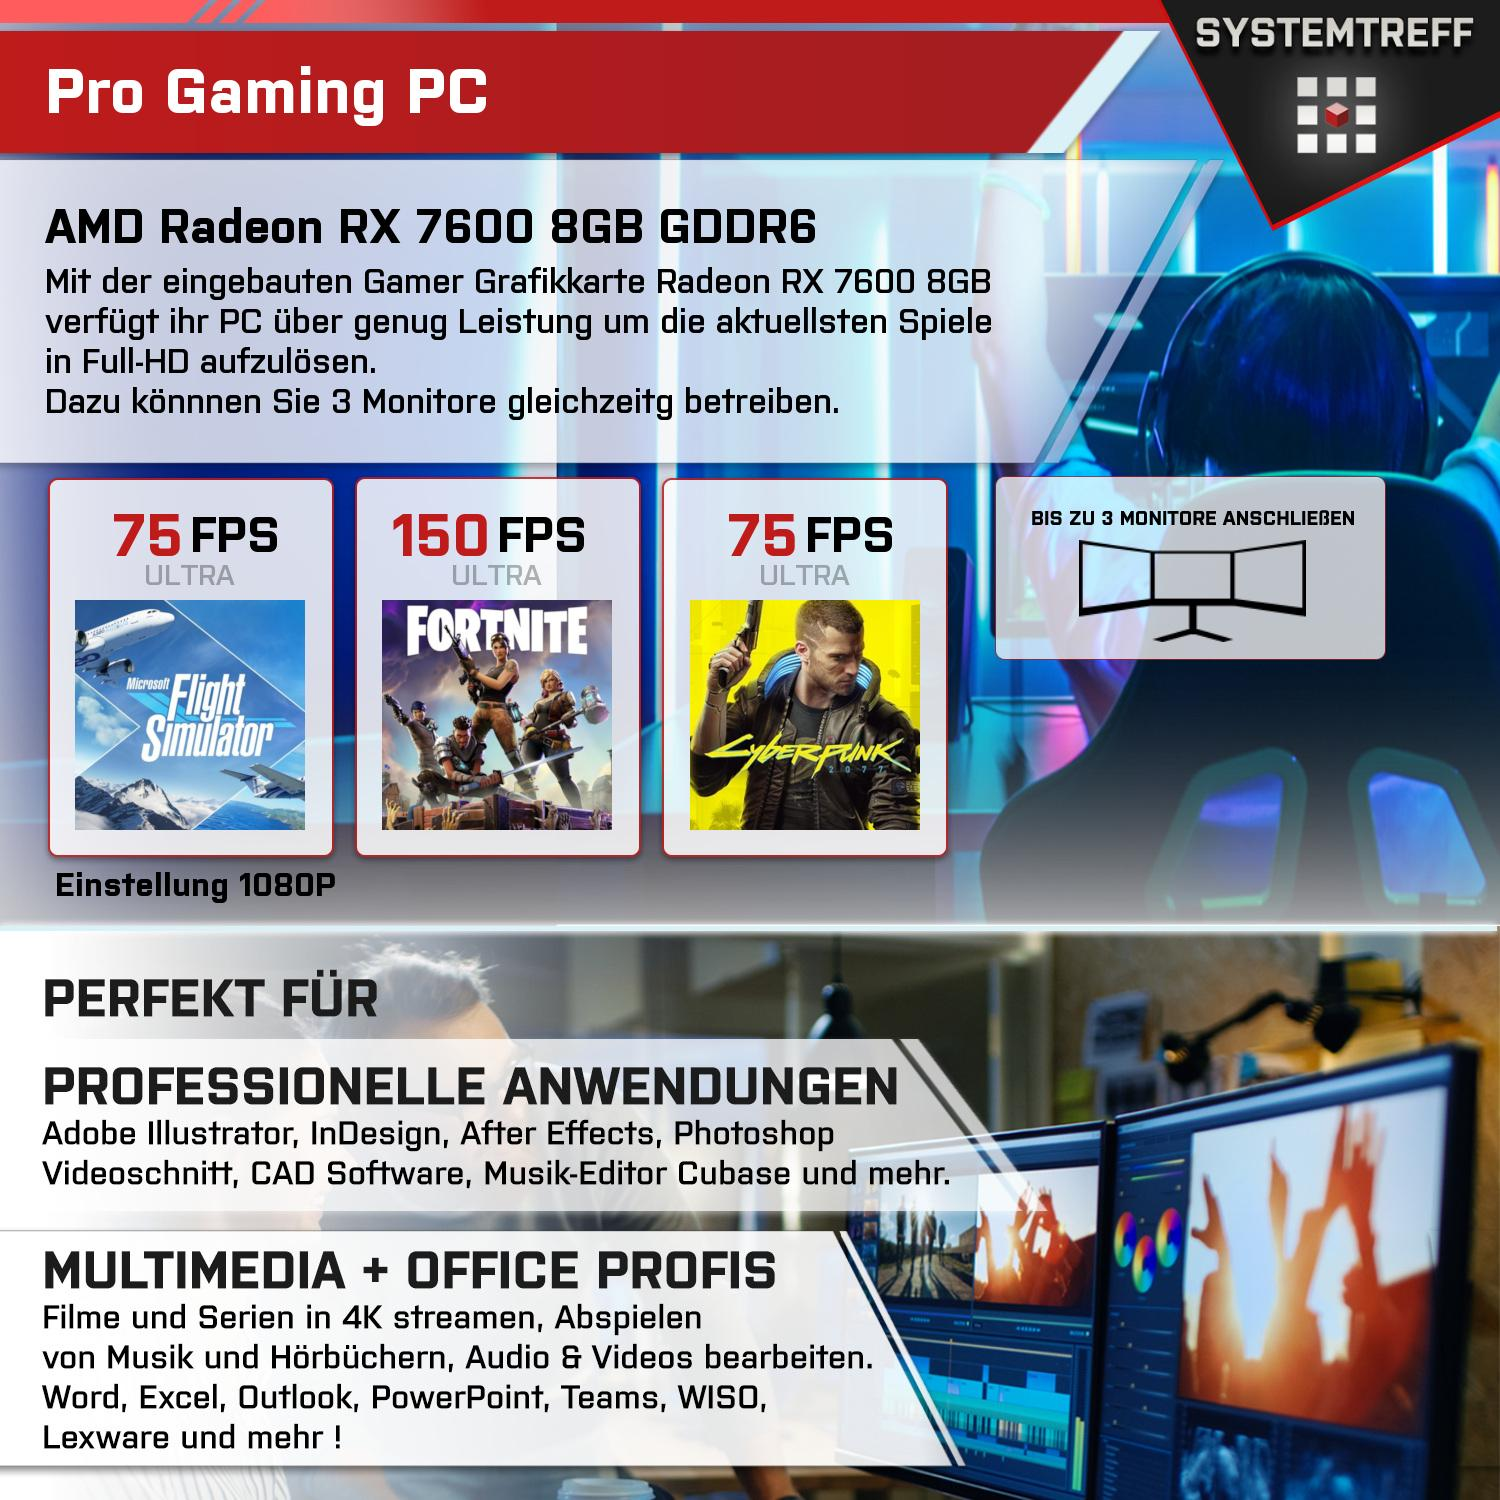 SYSTEMTREFF Gaming Komplett AMD Ryzen 5700X, mSSD, 5700X Radeon 1000 8 mit GB RX Komplett GB RAM, PC 7 AMD GB 32 GDDR6, Prozessor, 7600 8GB